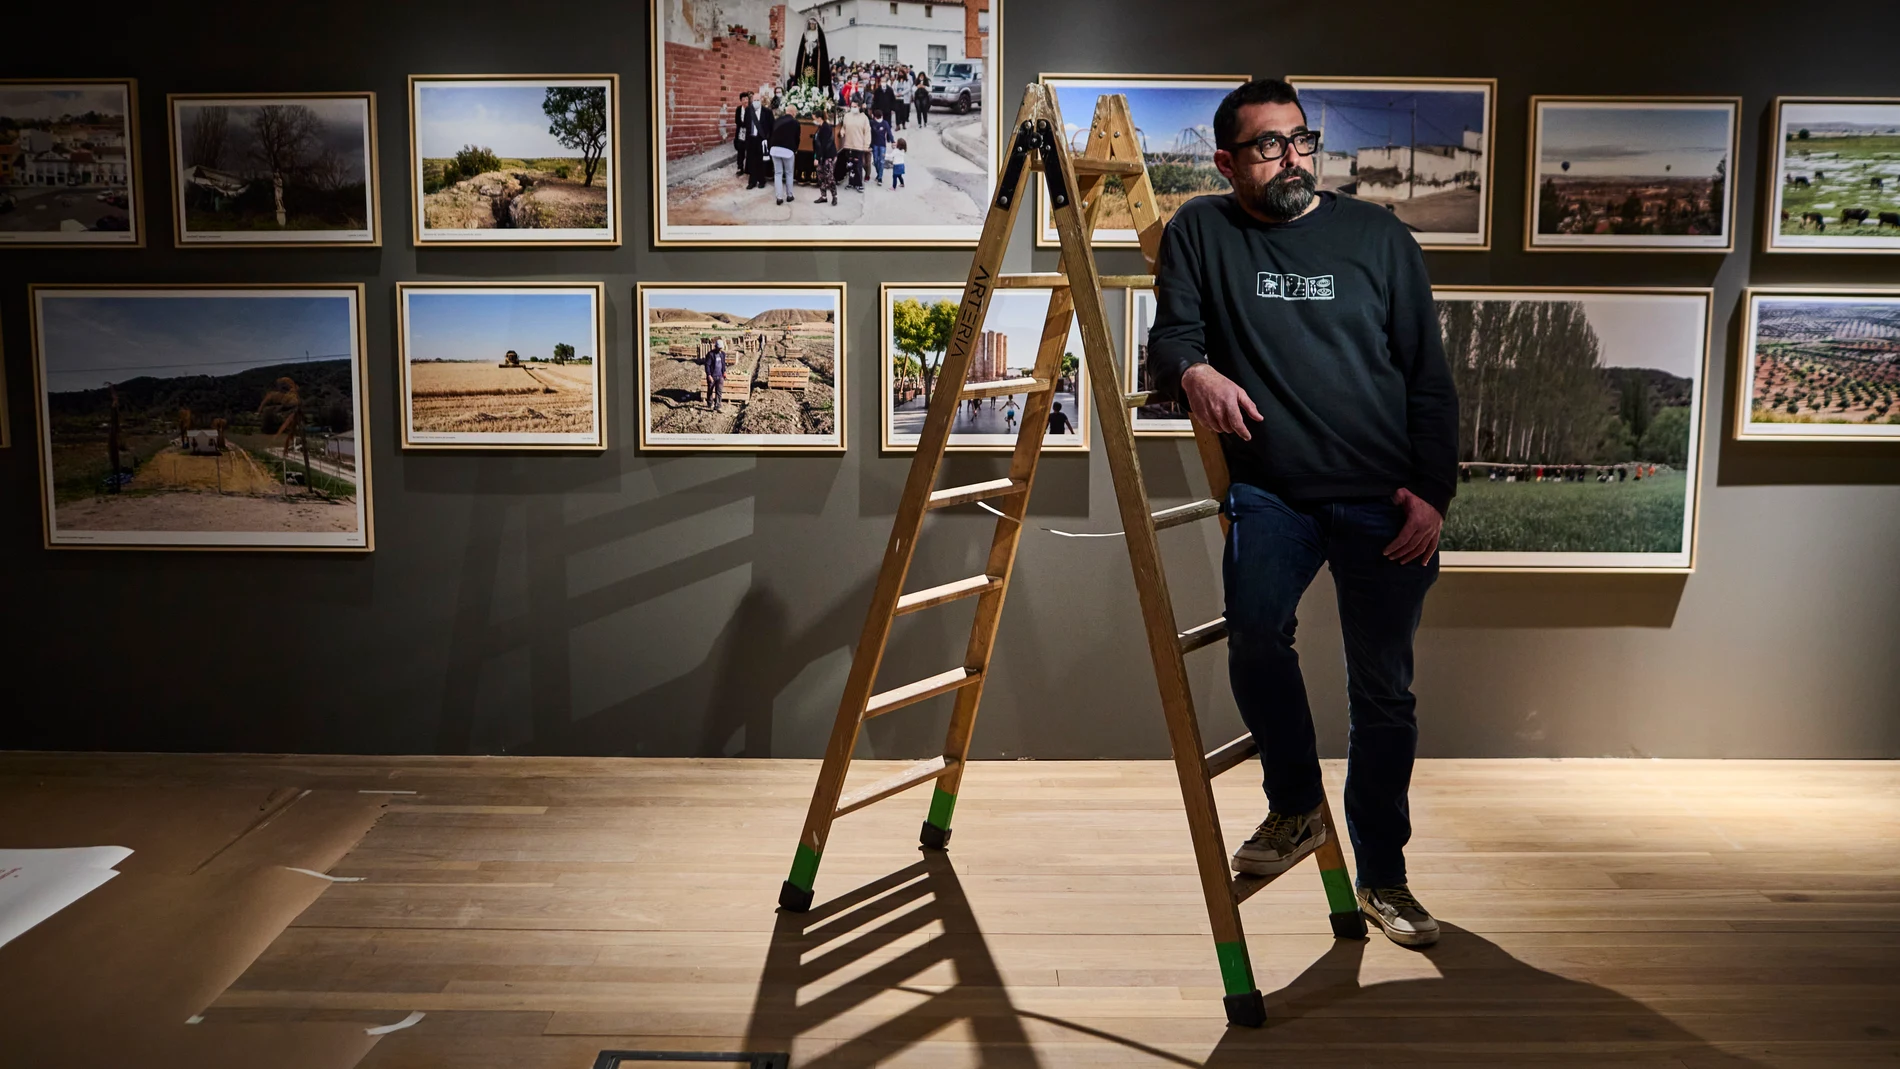 Entrevista con el fotógrafo Paco Gómez en la exposición de fotografía “REGIÓN. Paisaje, fotografía y patrimonio”, un recorrido único por el paisaje de la Comunidad de Madrid.